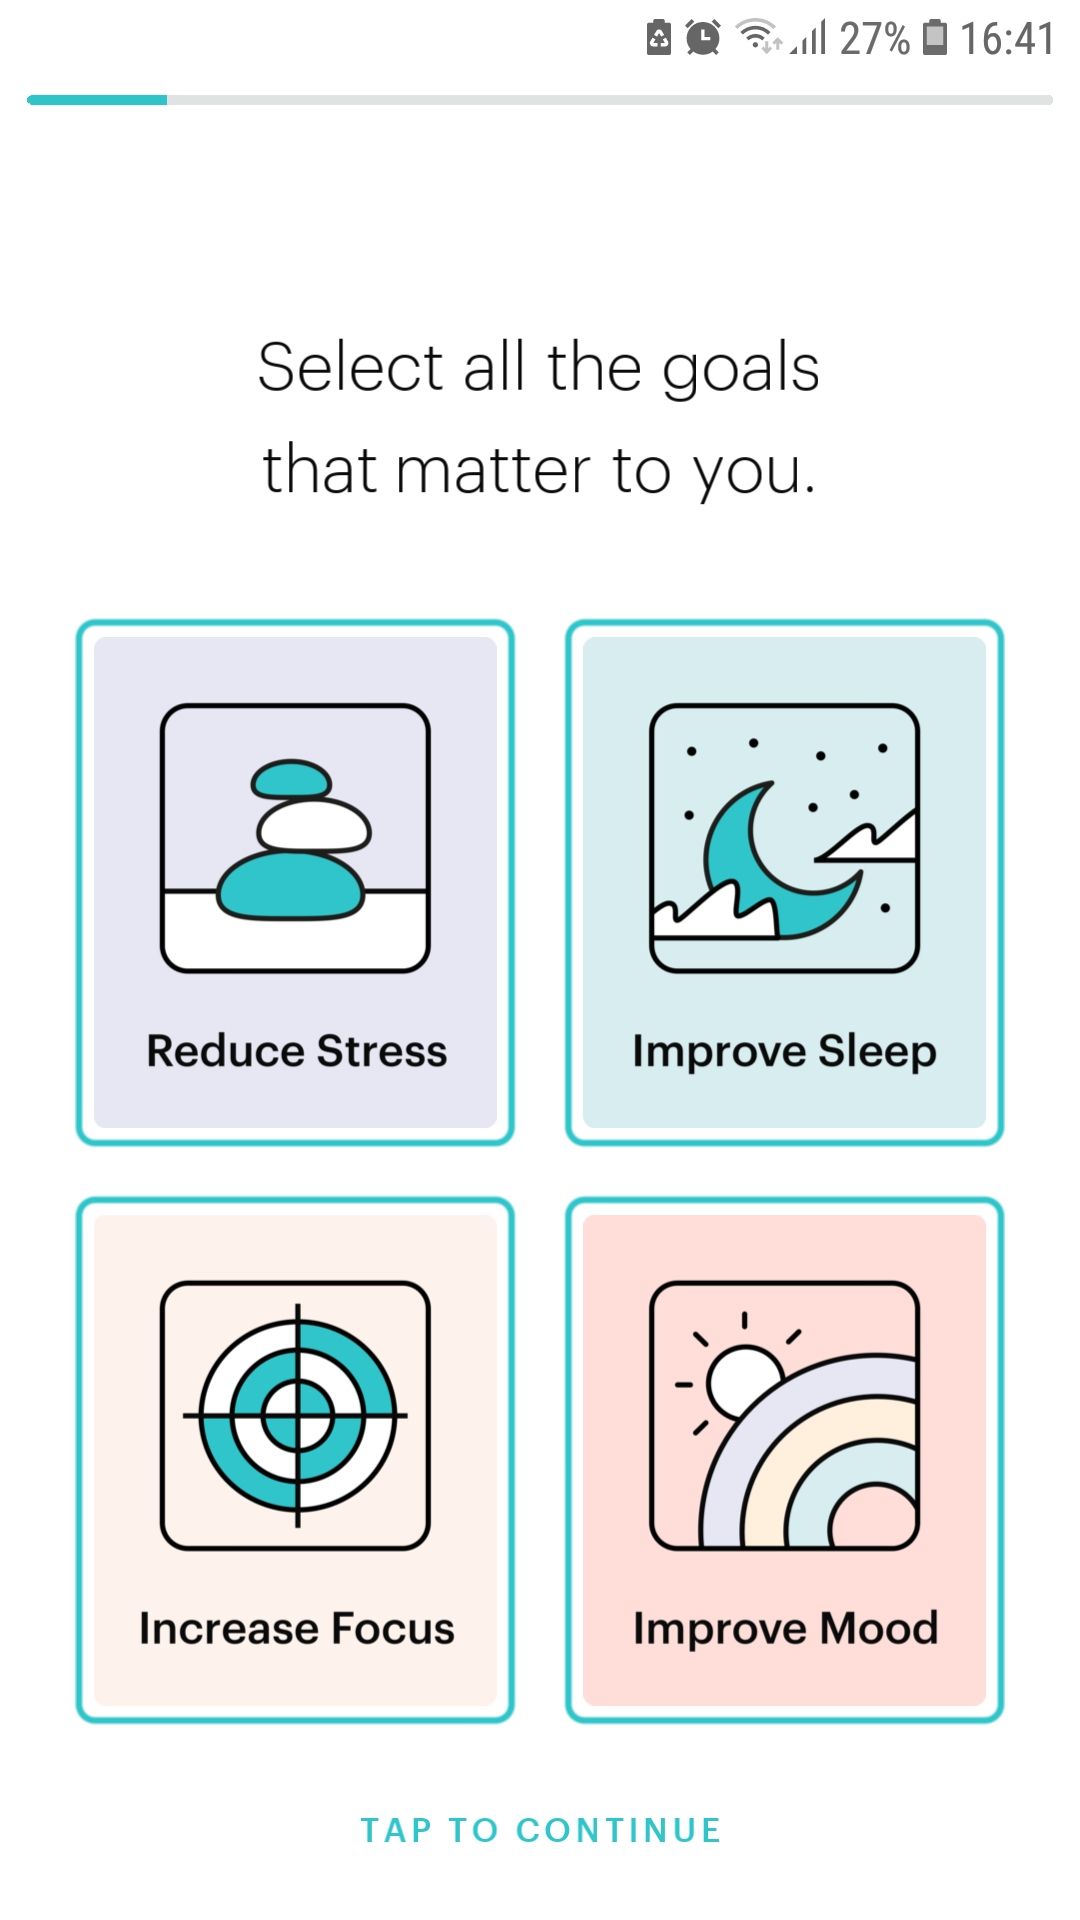 Balance mobile meditation app goals